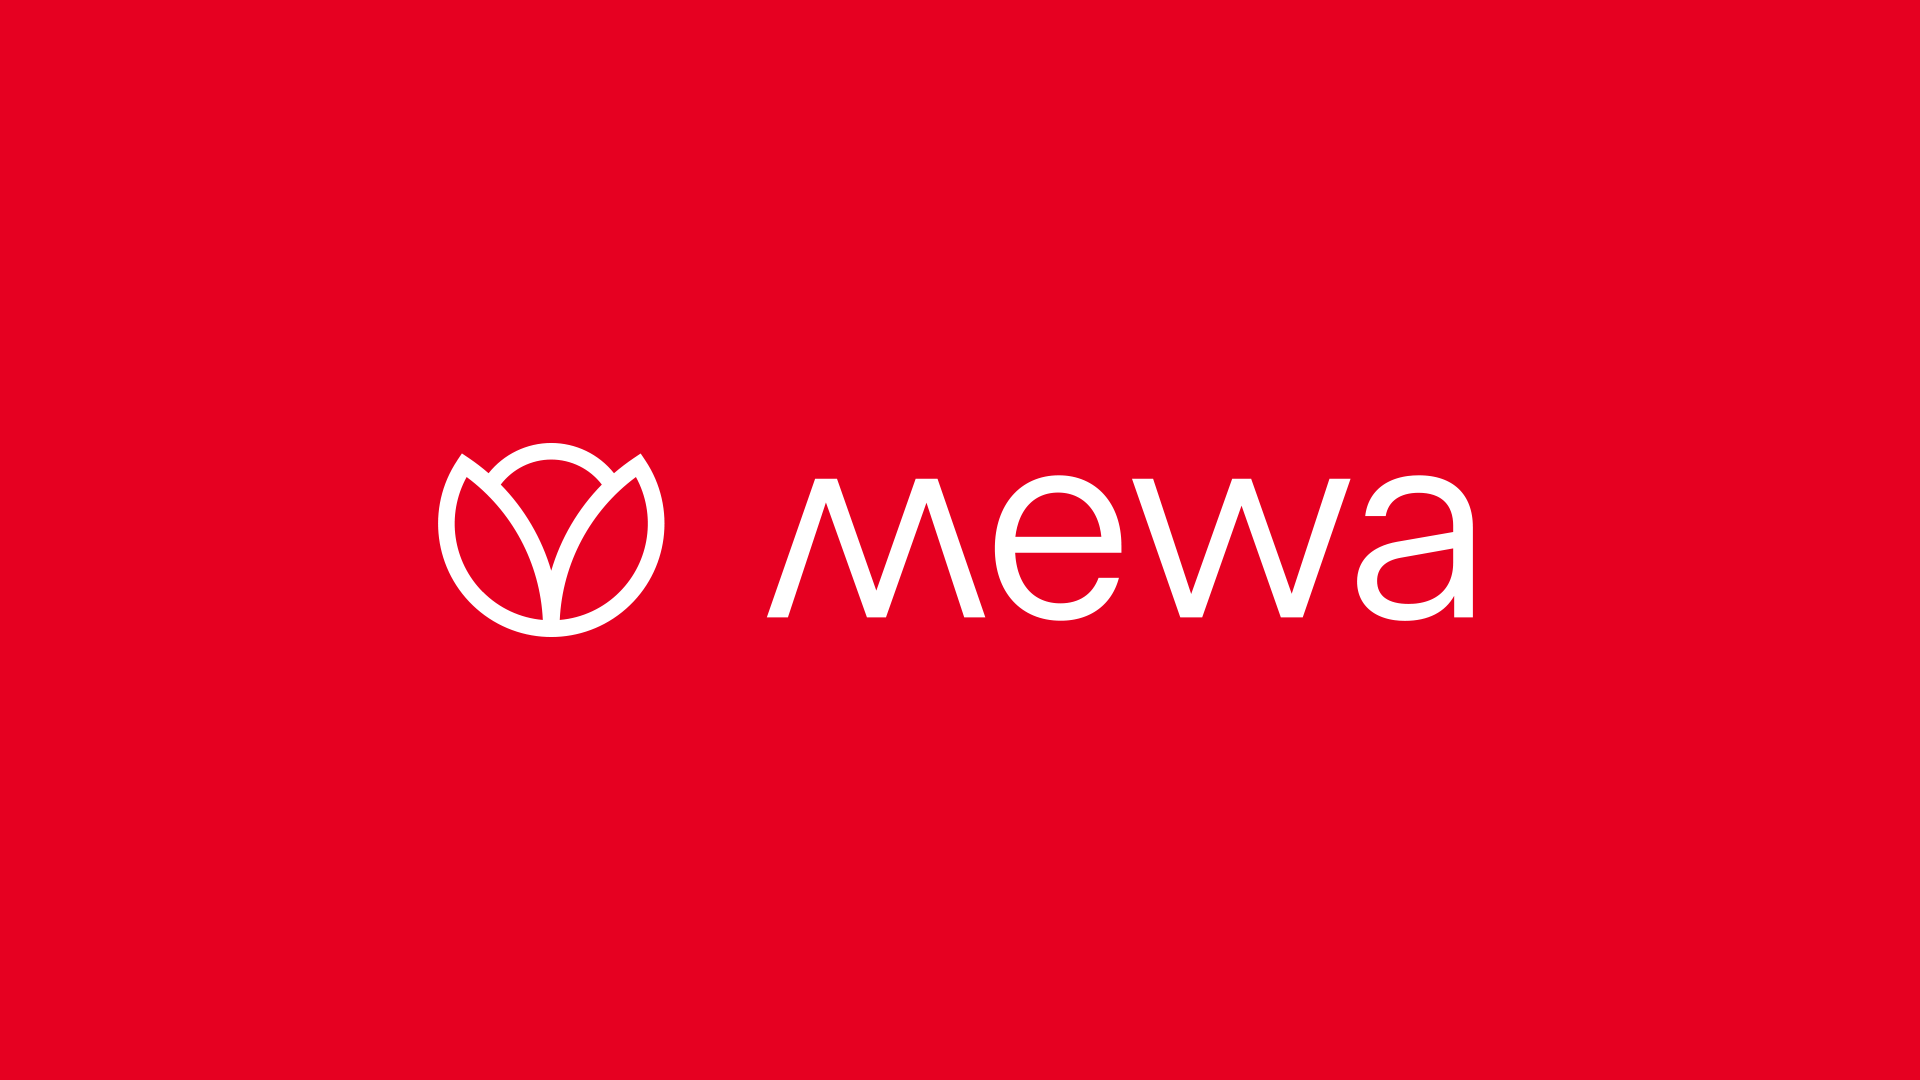 欧洲第三大纺织服务供应商 Mewa 启用新LOGO